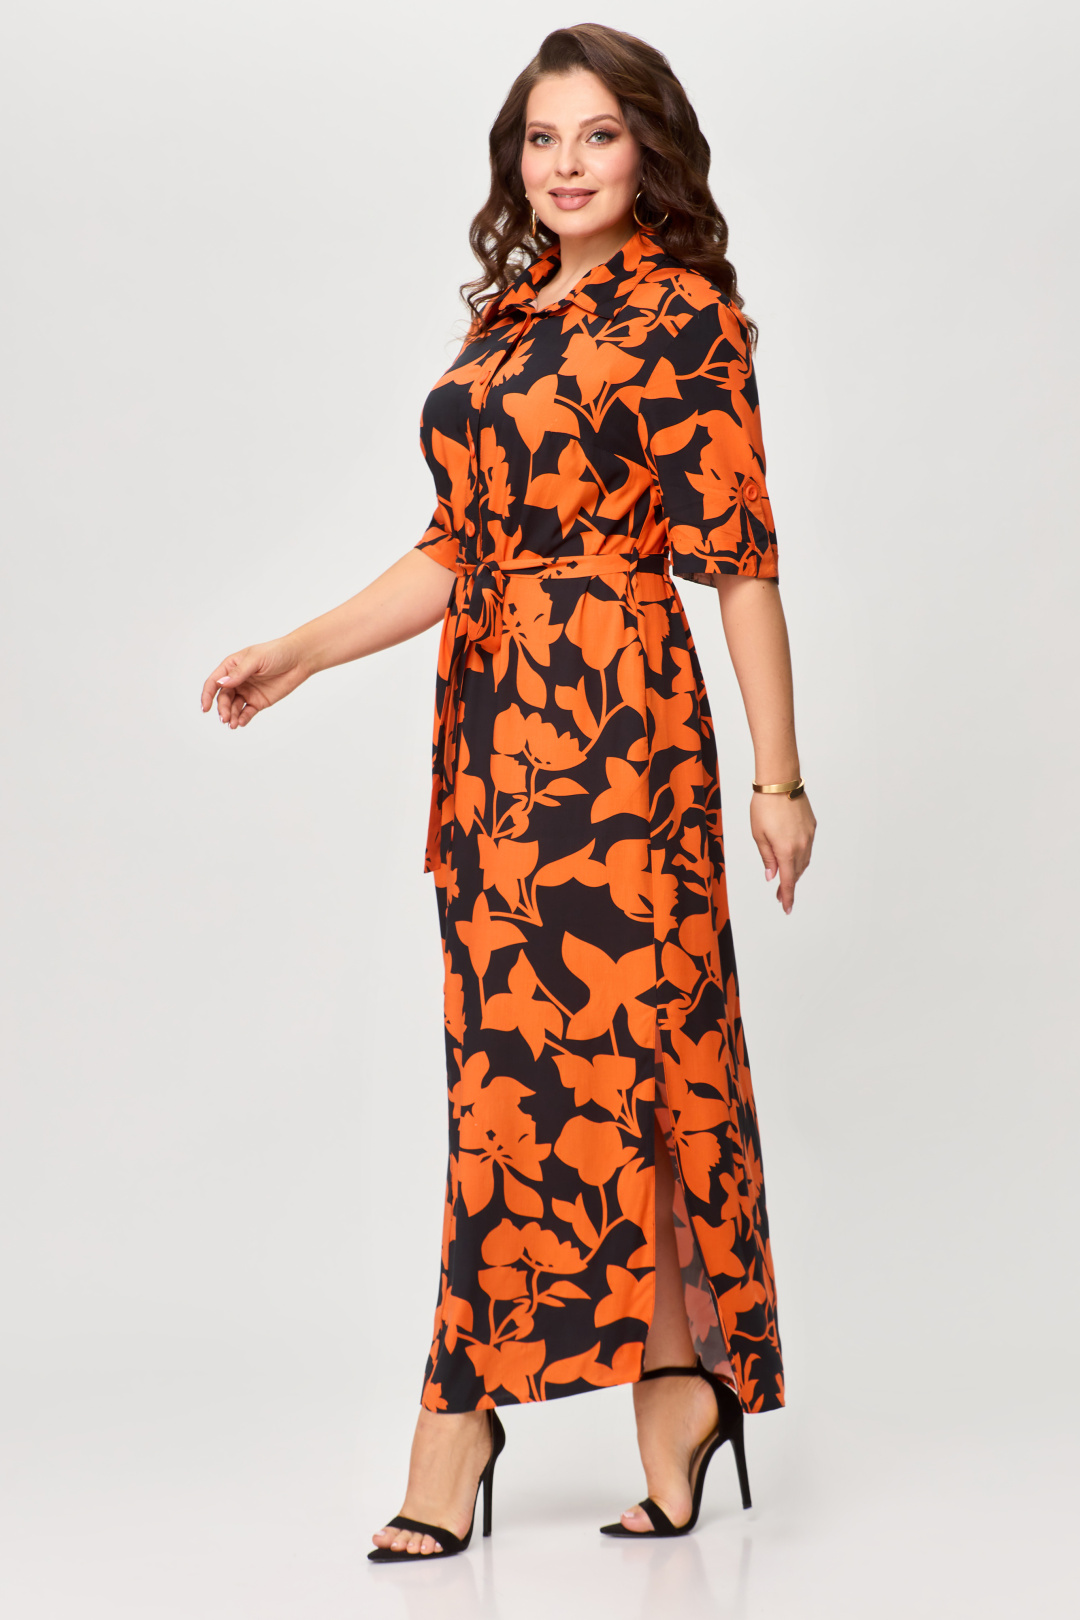 Платье Светлана-Стиль 1930 черный+оранжевый листик